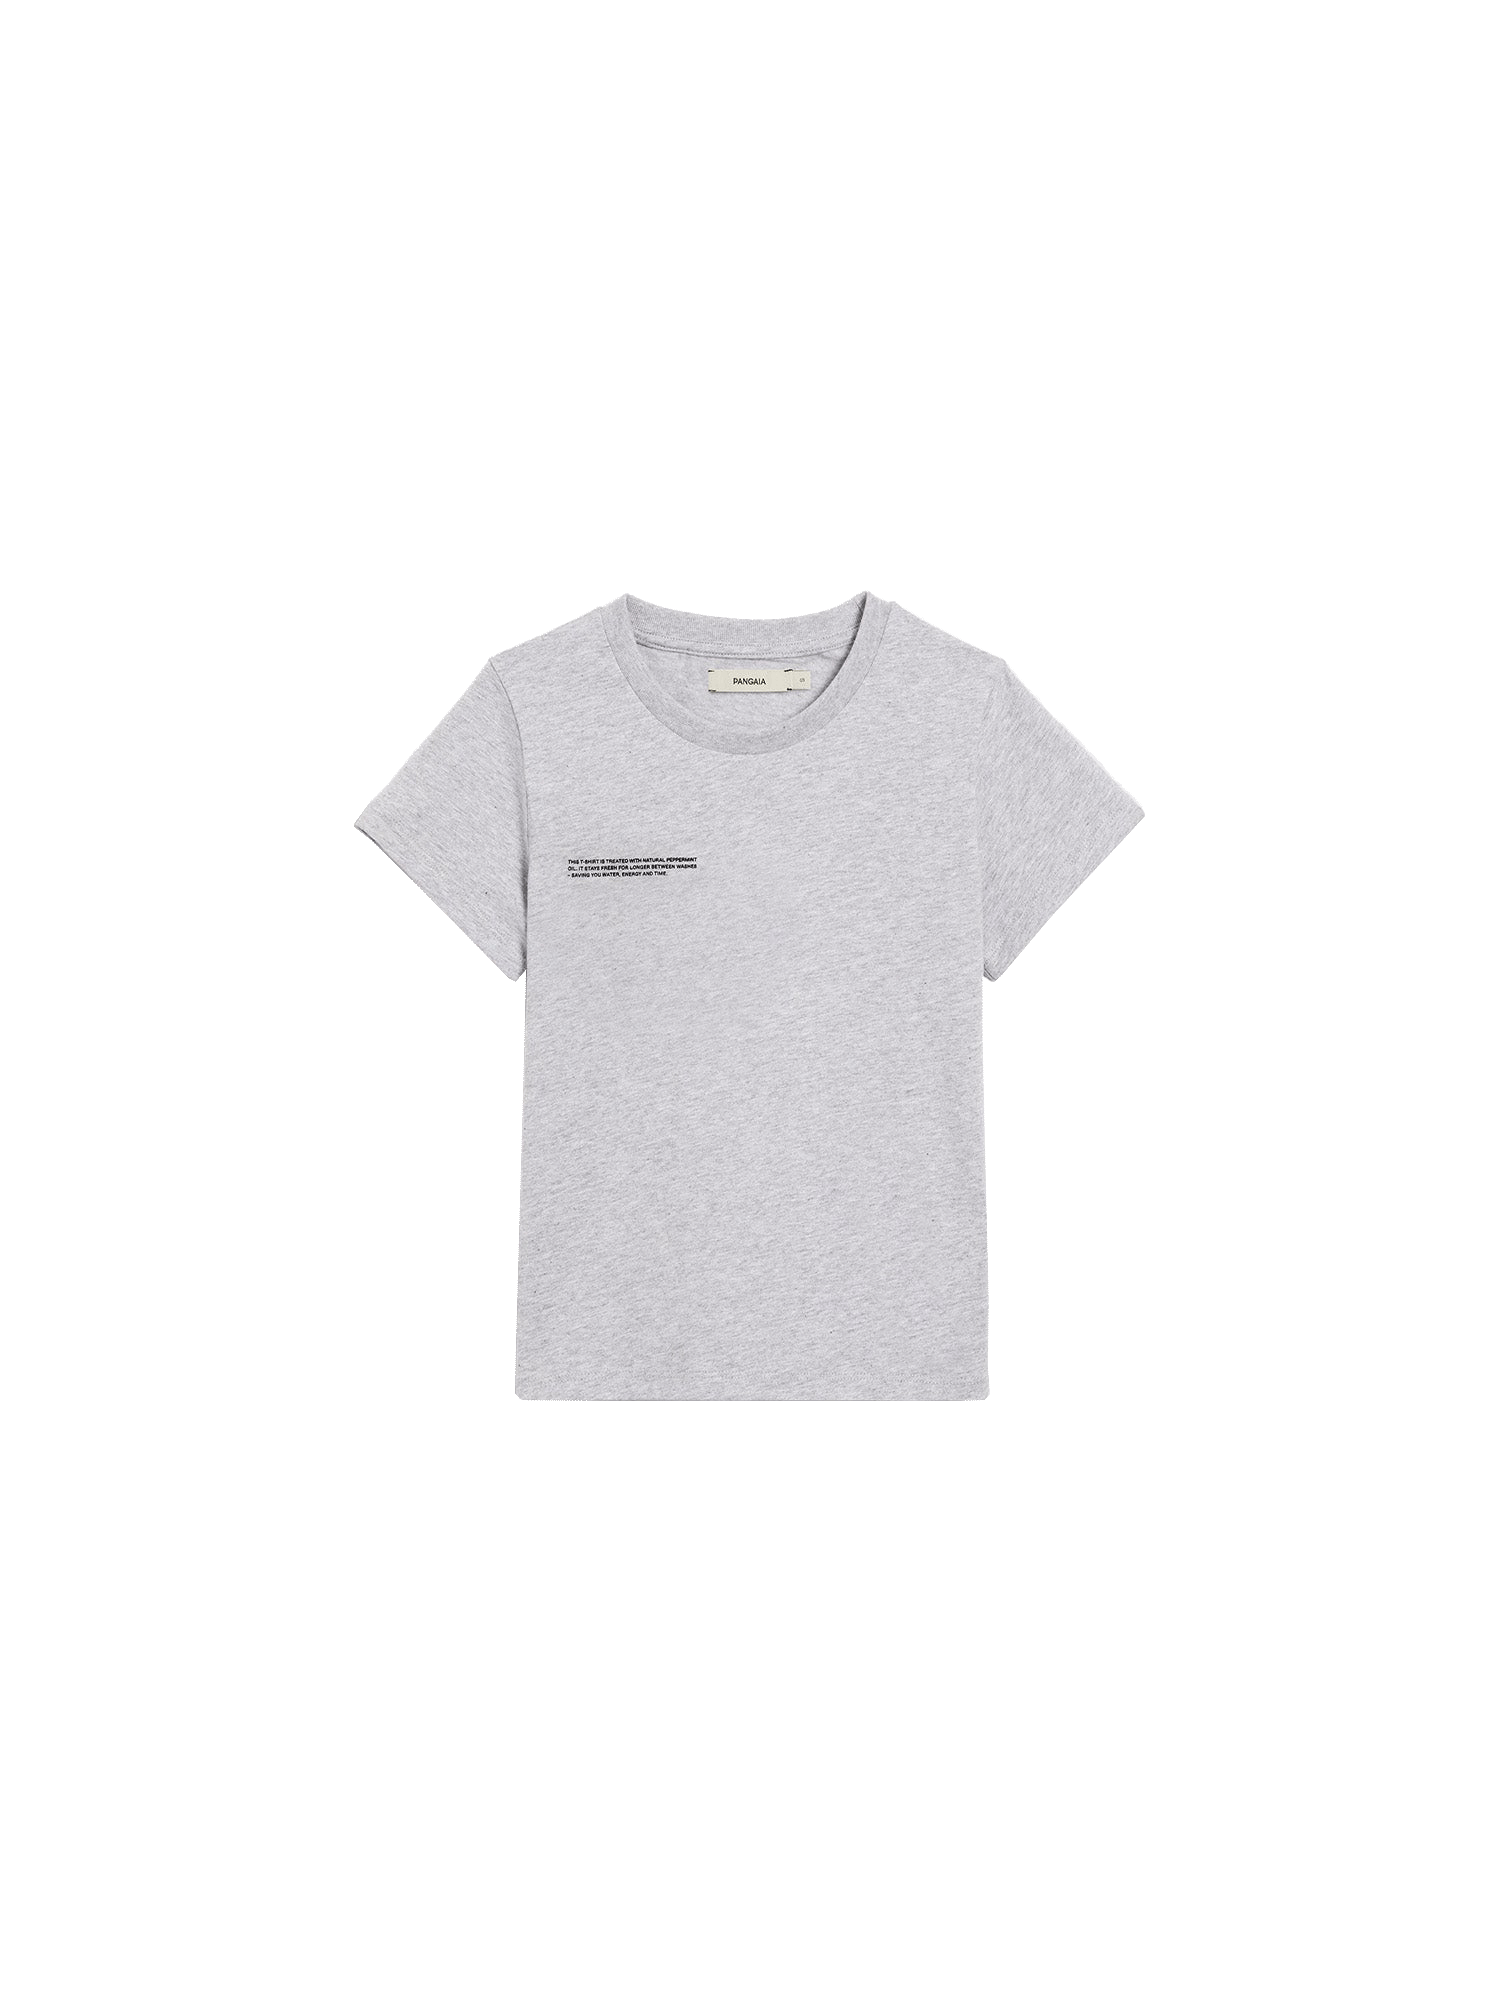 Kids-Organic-Cotton-T-Shirt-Grey-packshot-3